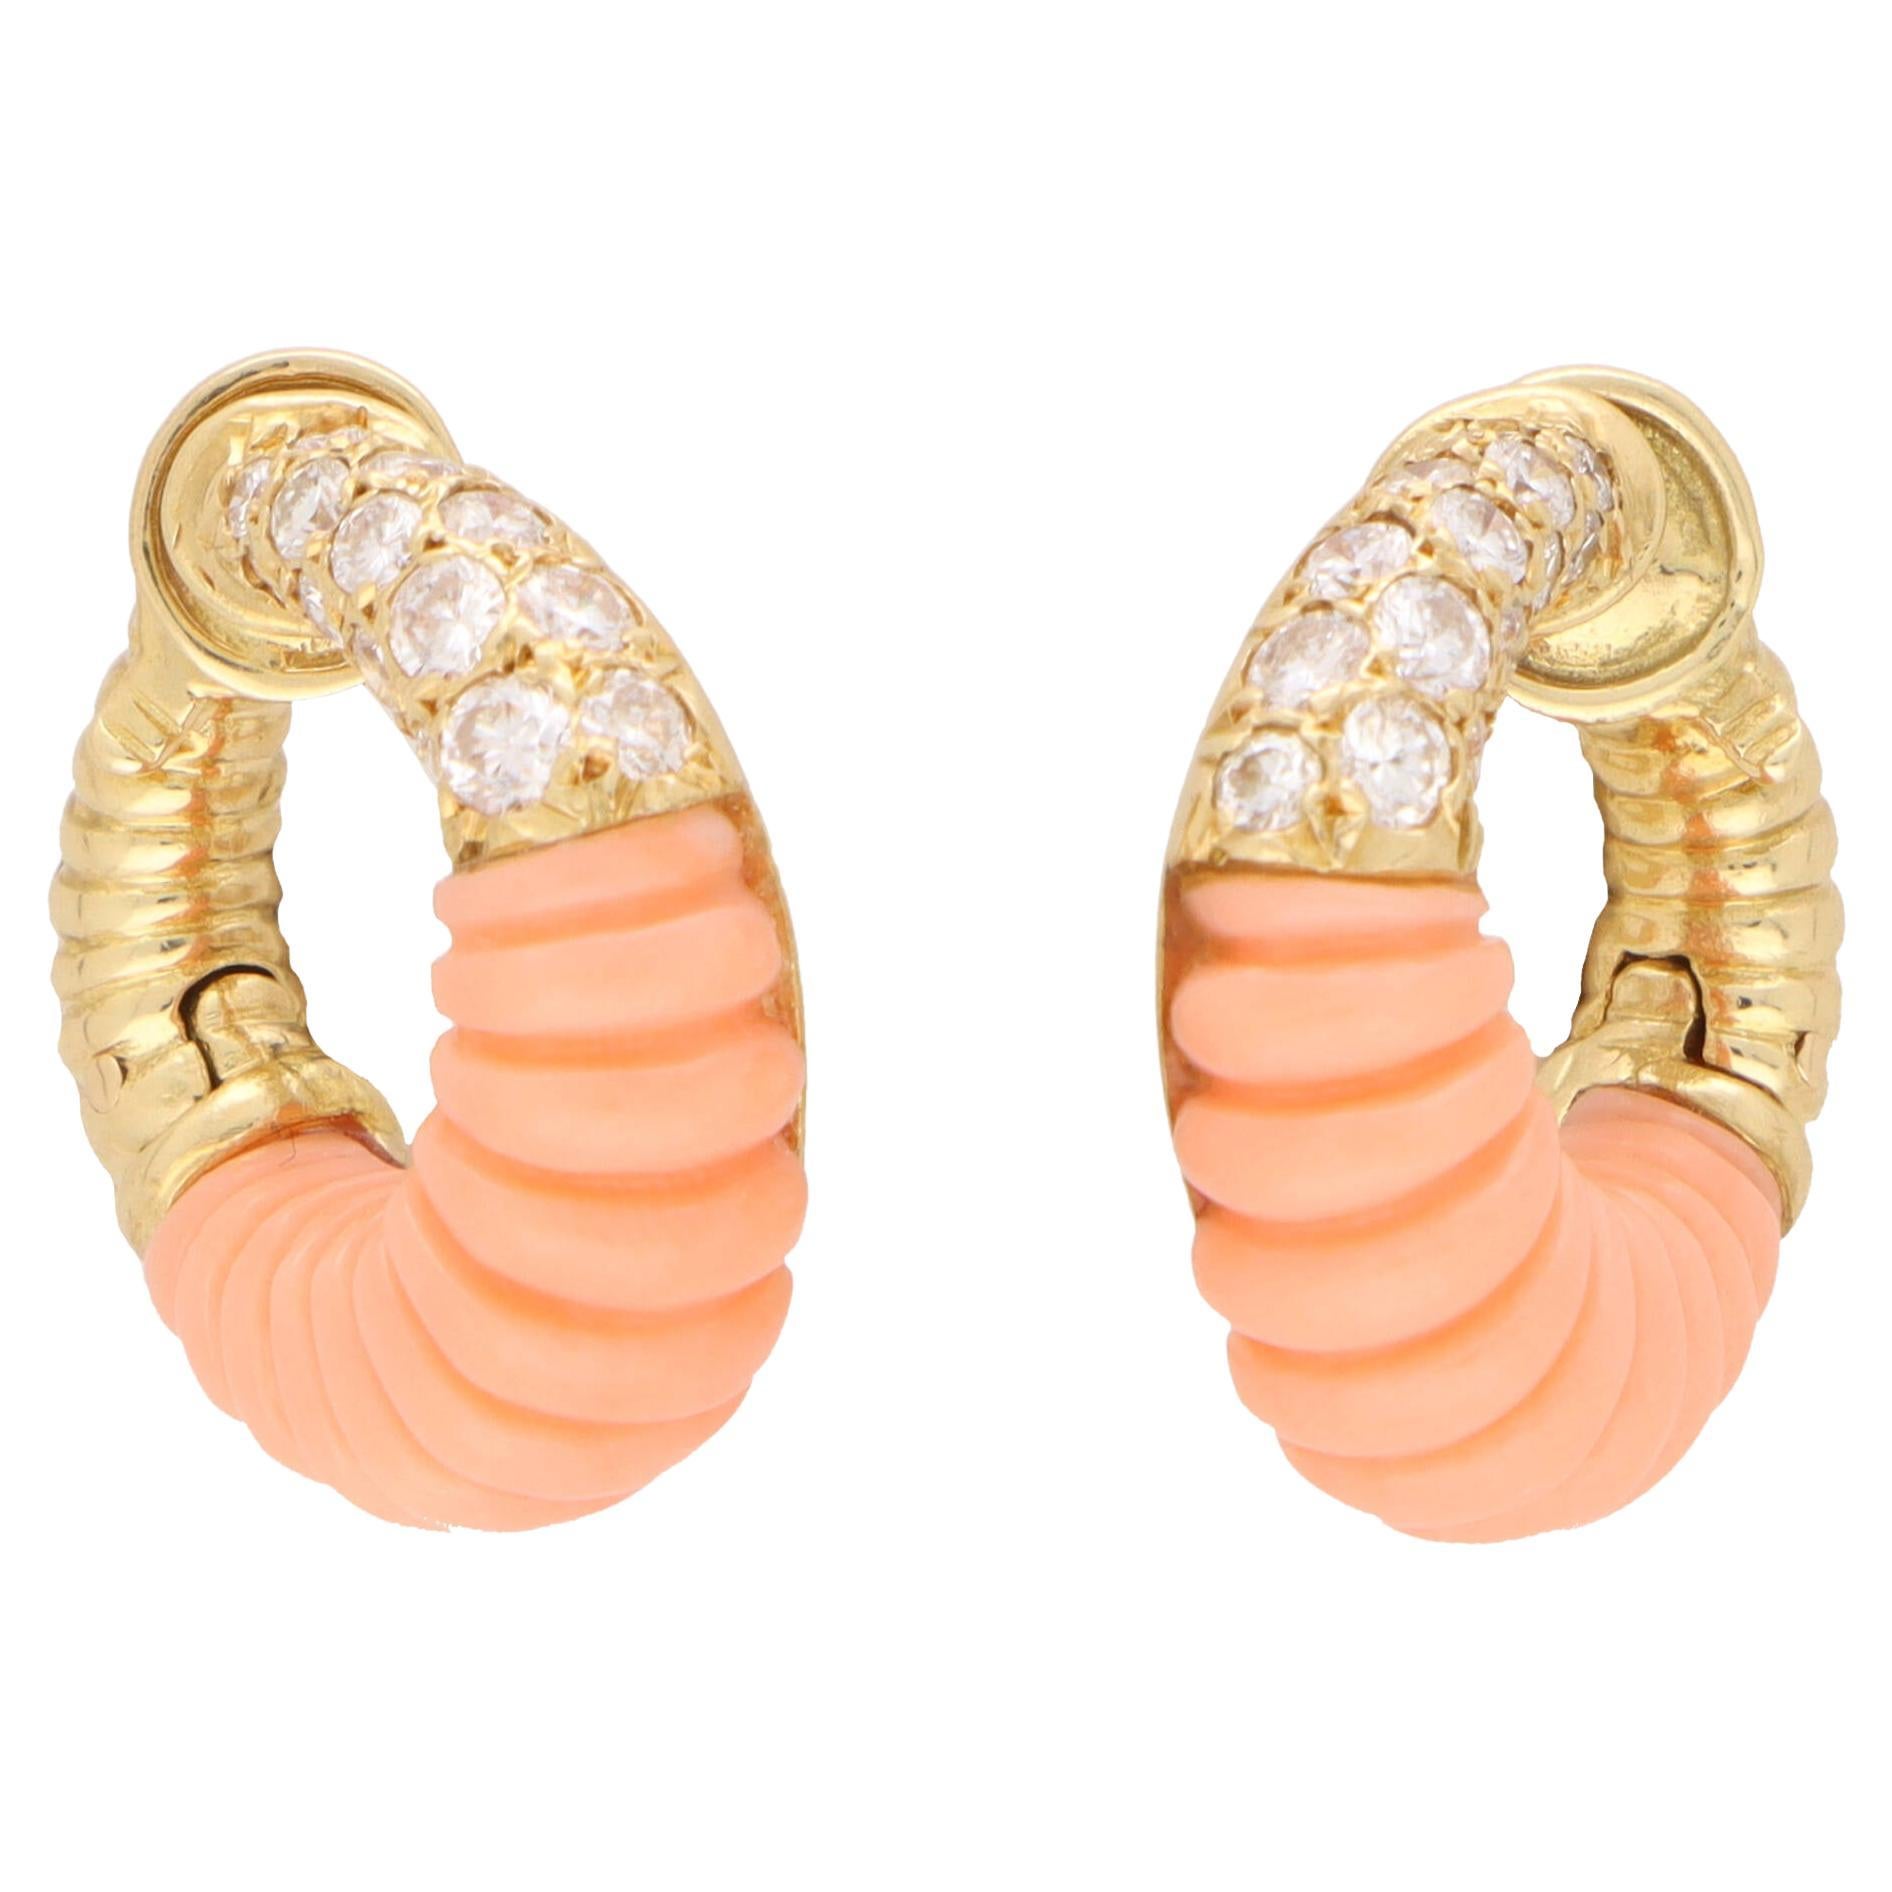 Vintage Van Cleef & Arpels Coral and Diamond Hoop Earrings in 18k Yellow Gold